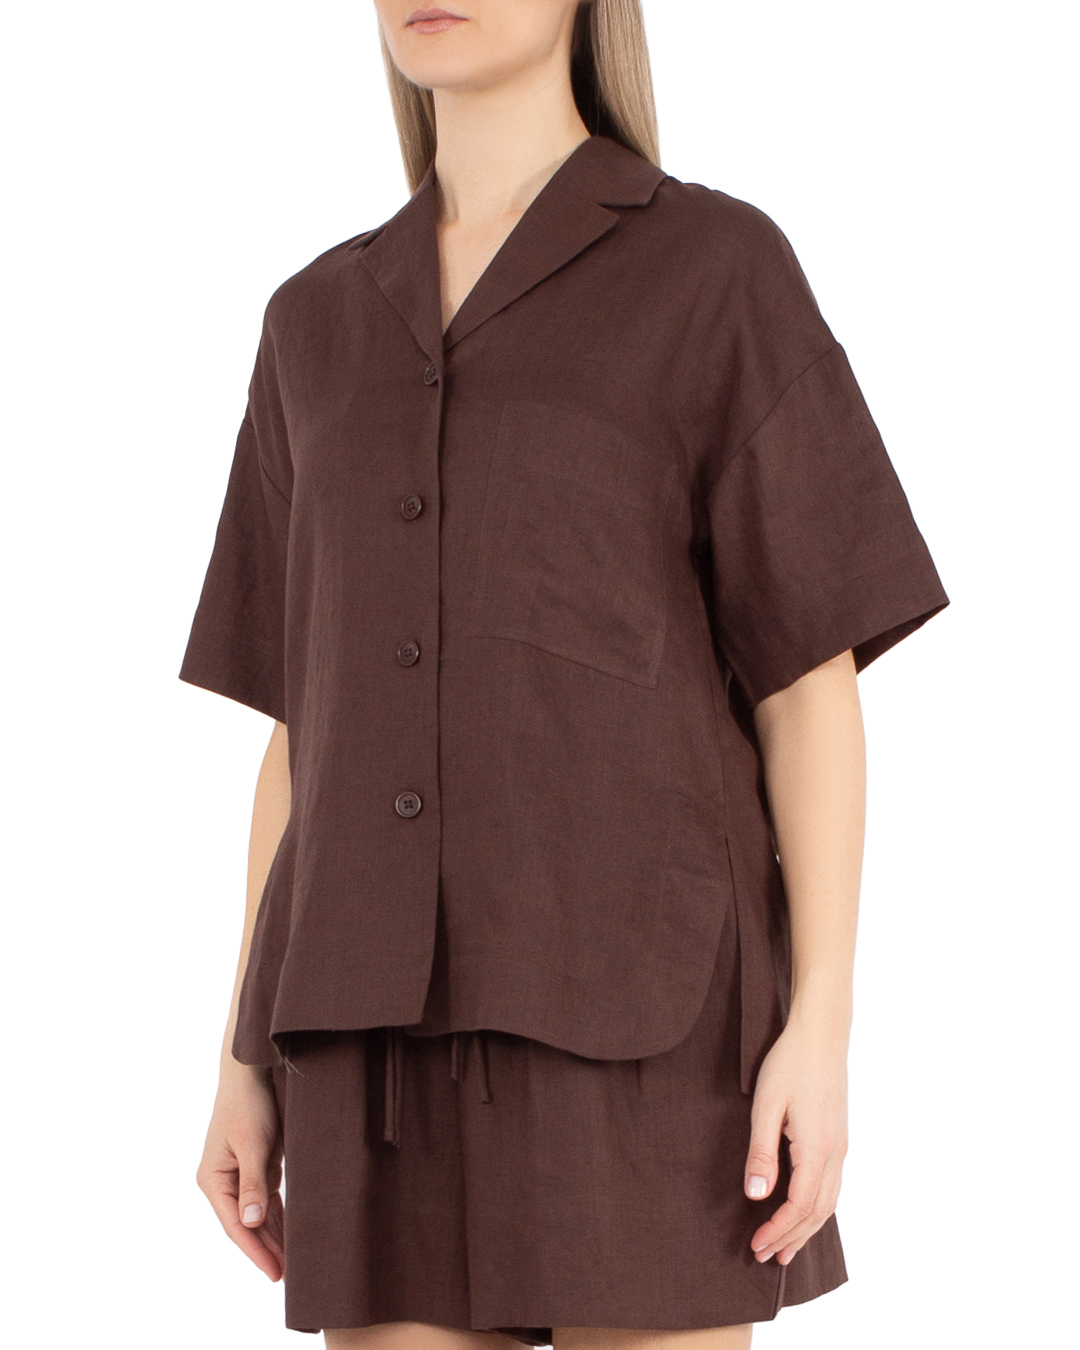 блуза MEIMEIJ M4EL01 коричневый 38, размер 38 - фото 3